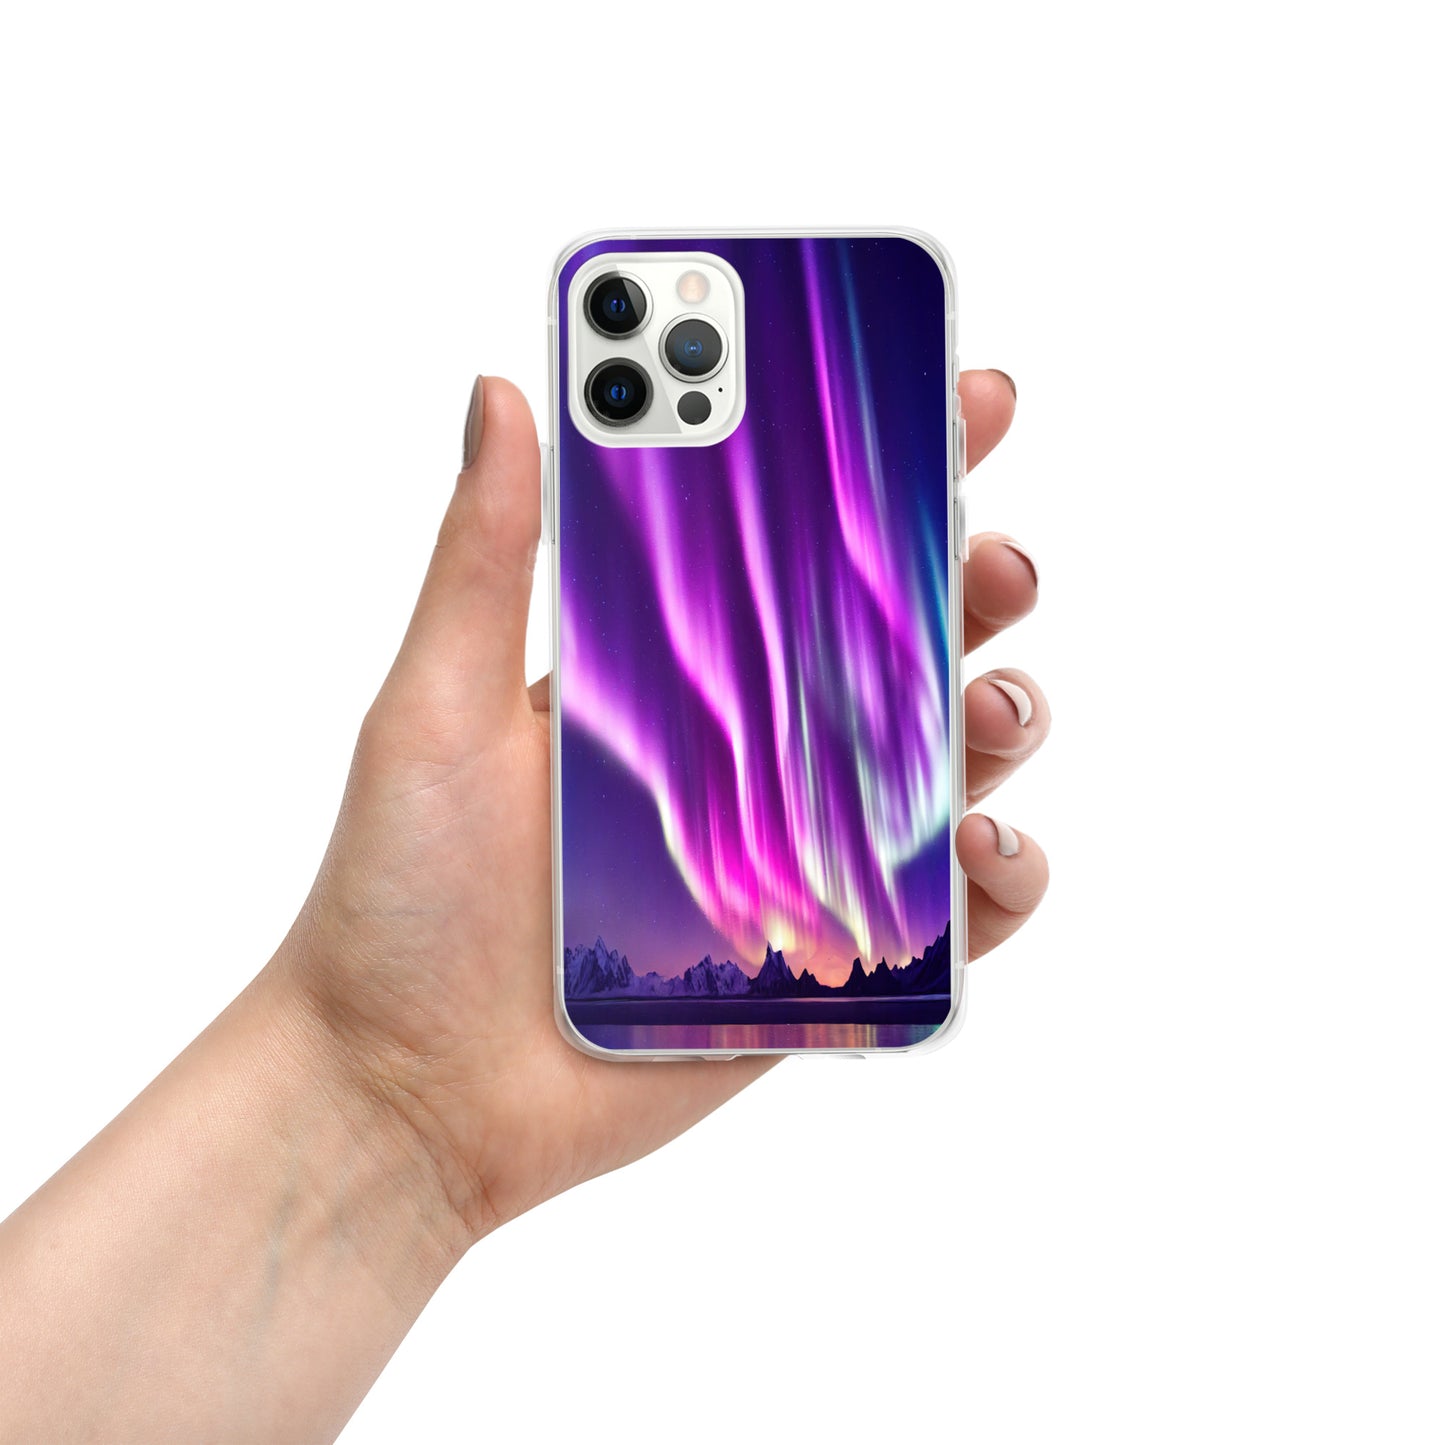 Unique Aurora Borealis iPhone Cover Case - Northern Light Phone Cover Case - Clear Case for iPhone - Perfect Aurora Lovers Gift 1